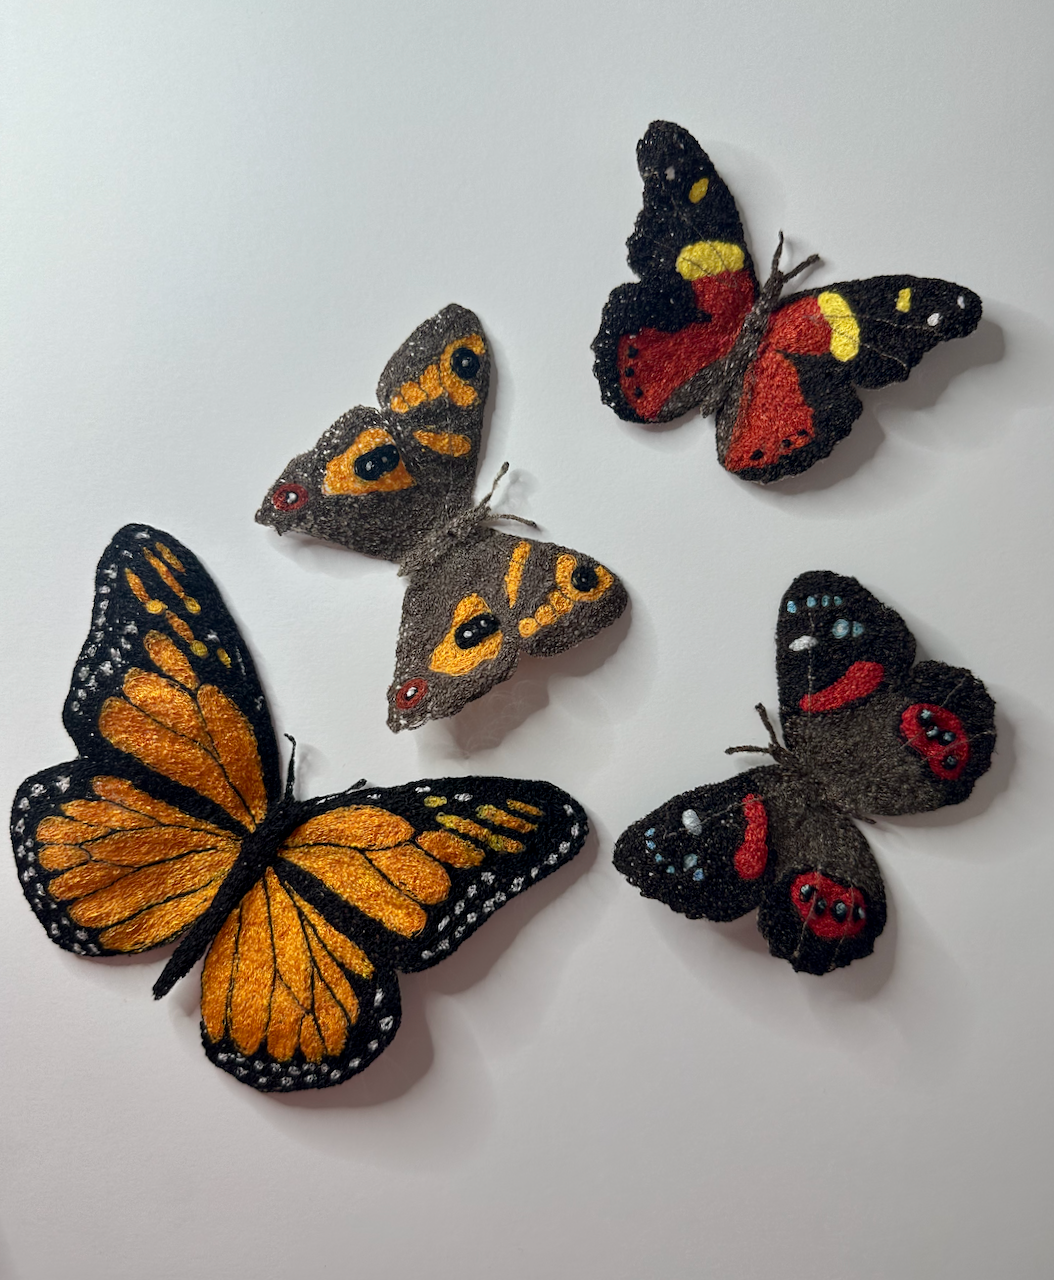 Butterflies of New Zealand sculptural embroidery